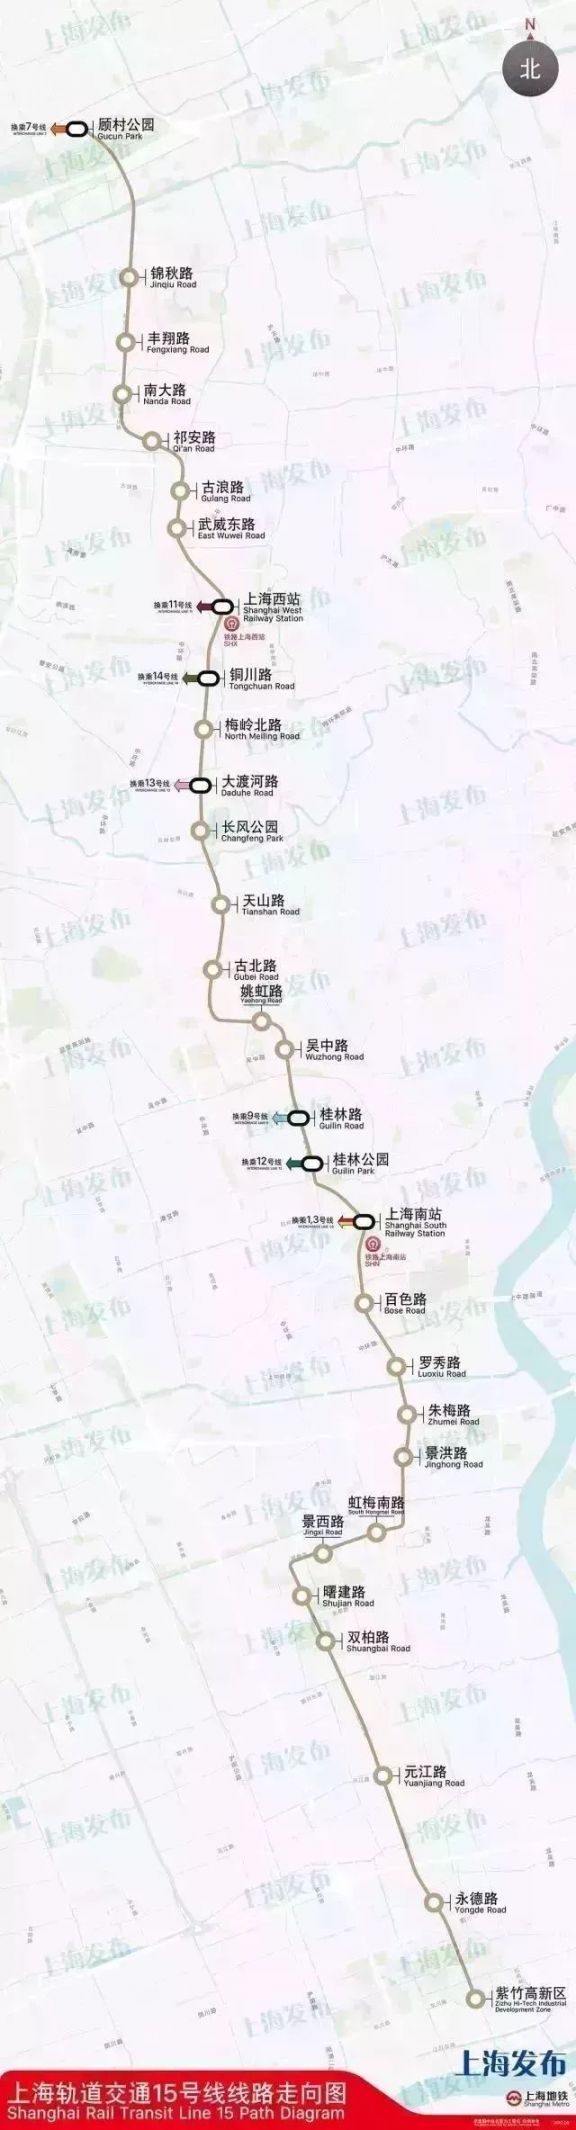 上海地铁15号线站点及线路图一览